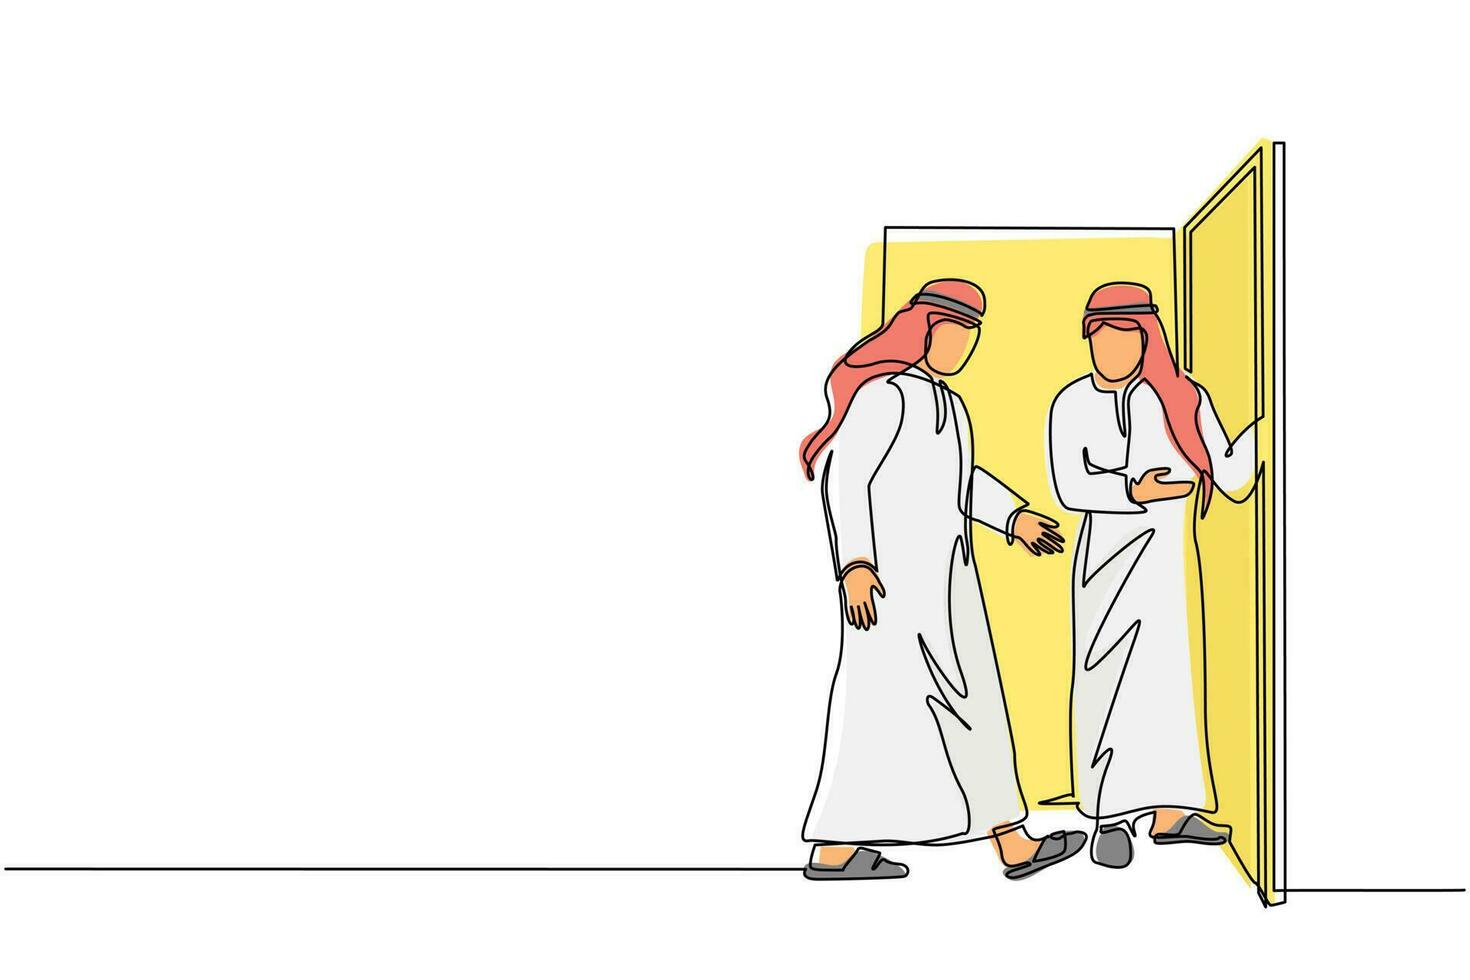 un solo dibujo de línea continua hombre de negocios árabe en la puerta da la bienvenida a su amigo. el hombre está invitando a su amigo a entrar en su casa. concepto de hospitalidad. ilustración de vector de diseño gráfico de dibujo de una línea